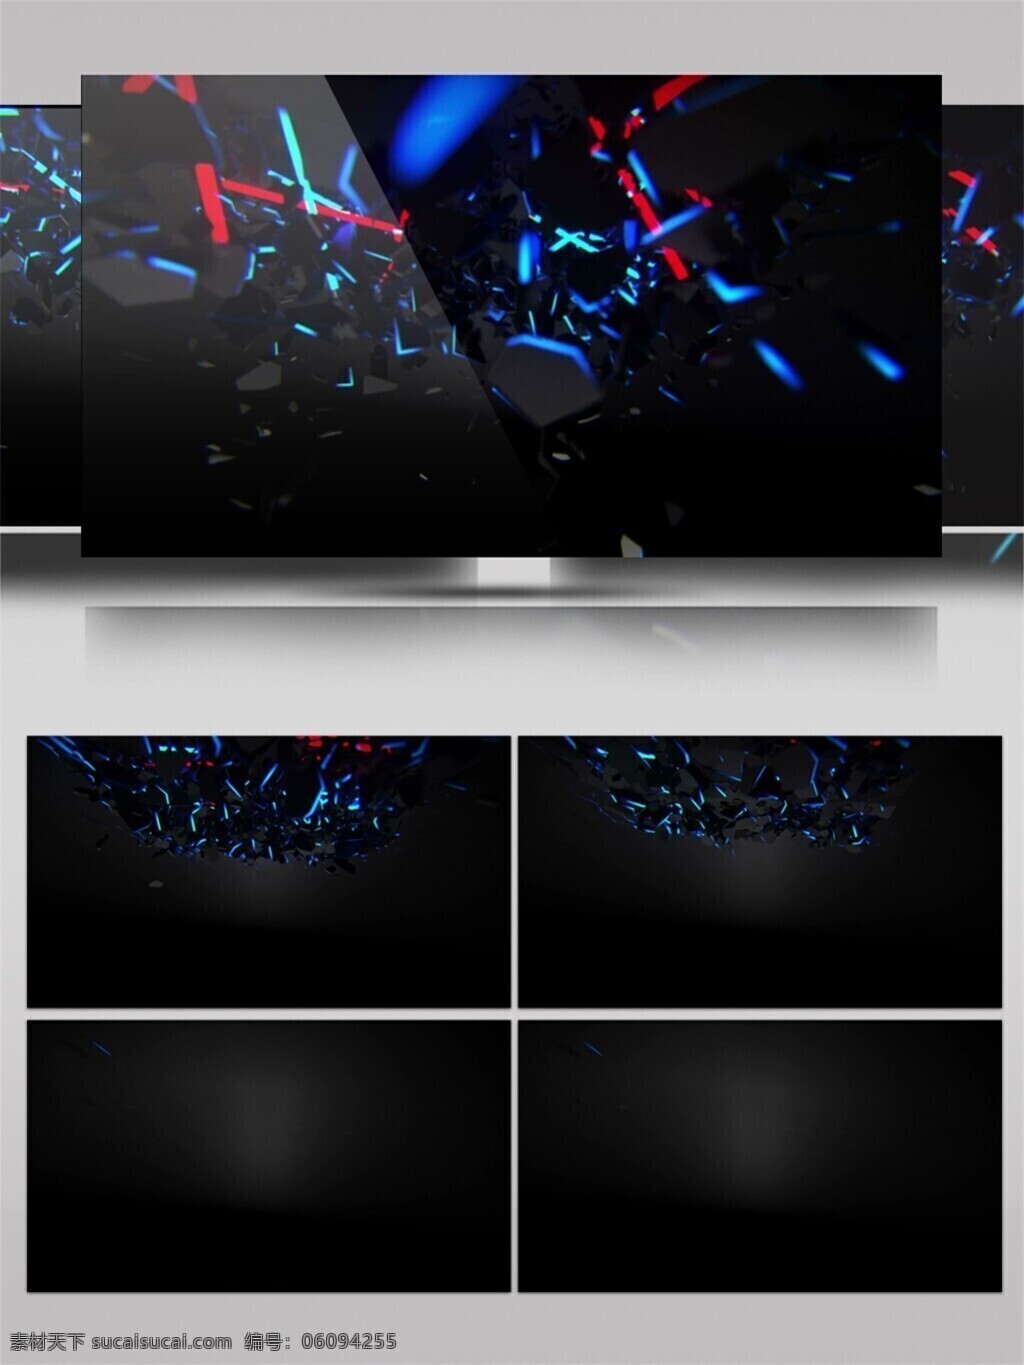 光斑散射 光束 蓝色 视觉享受 手机壁纸 星际 星光 舞台 视频